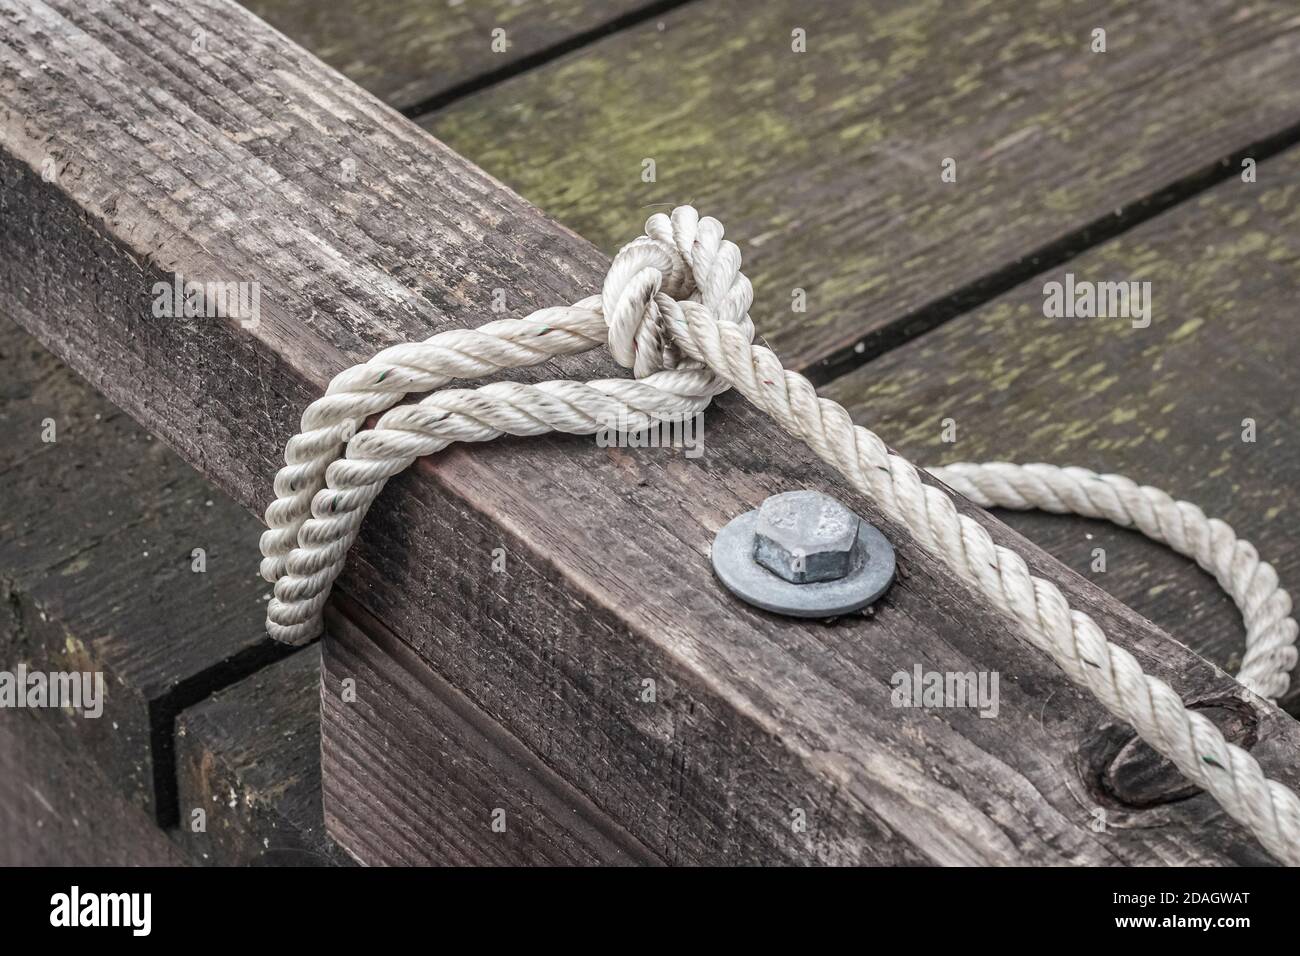 Una corda bianca a tre trefoli, che fissa una barca, è avvolta intorno a un corrimano di un molo di legno marrone, stagionato sulla costa occidentale del Canada (barca non visibile). Foto Stock